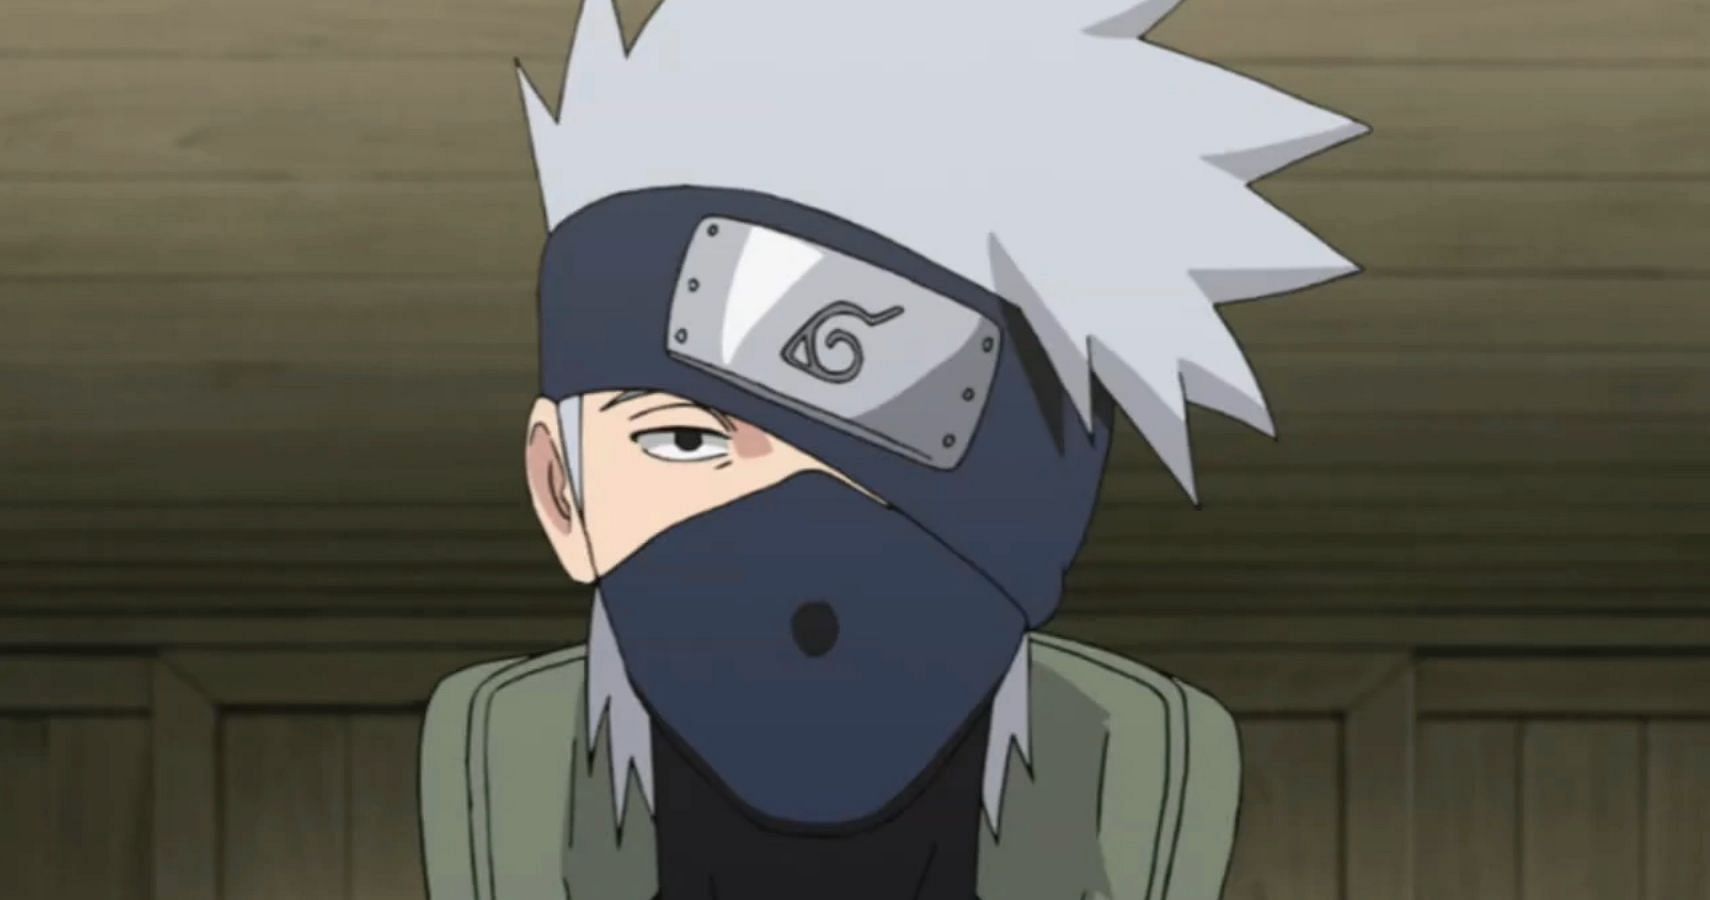 Kakashi Hatake as seen in Naruto (Image via Studio Pierrot)